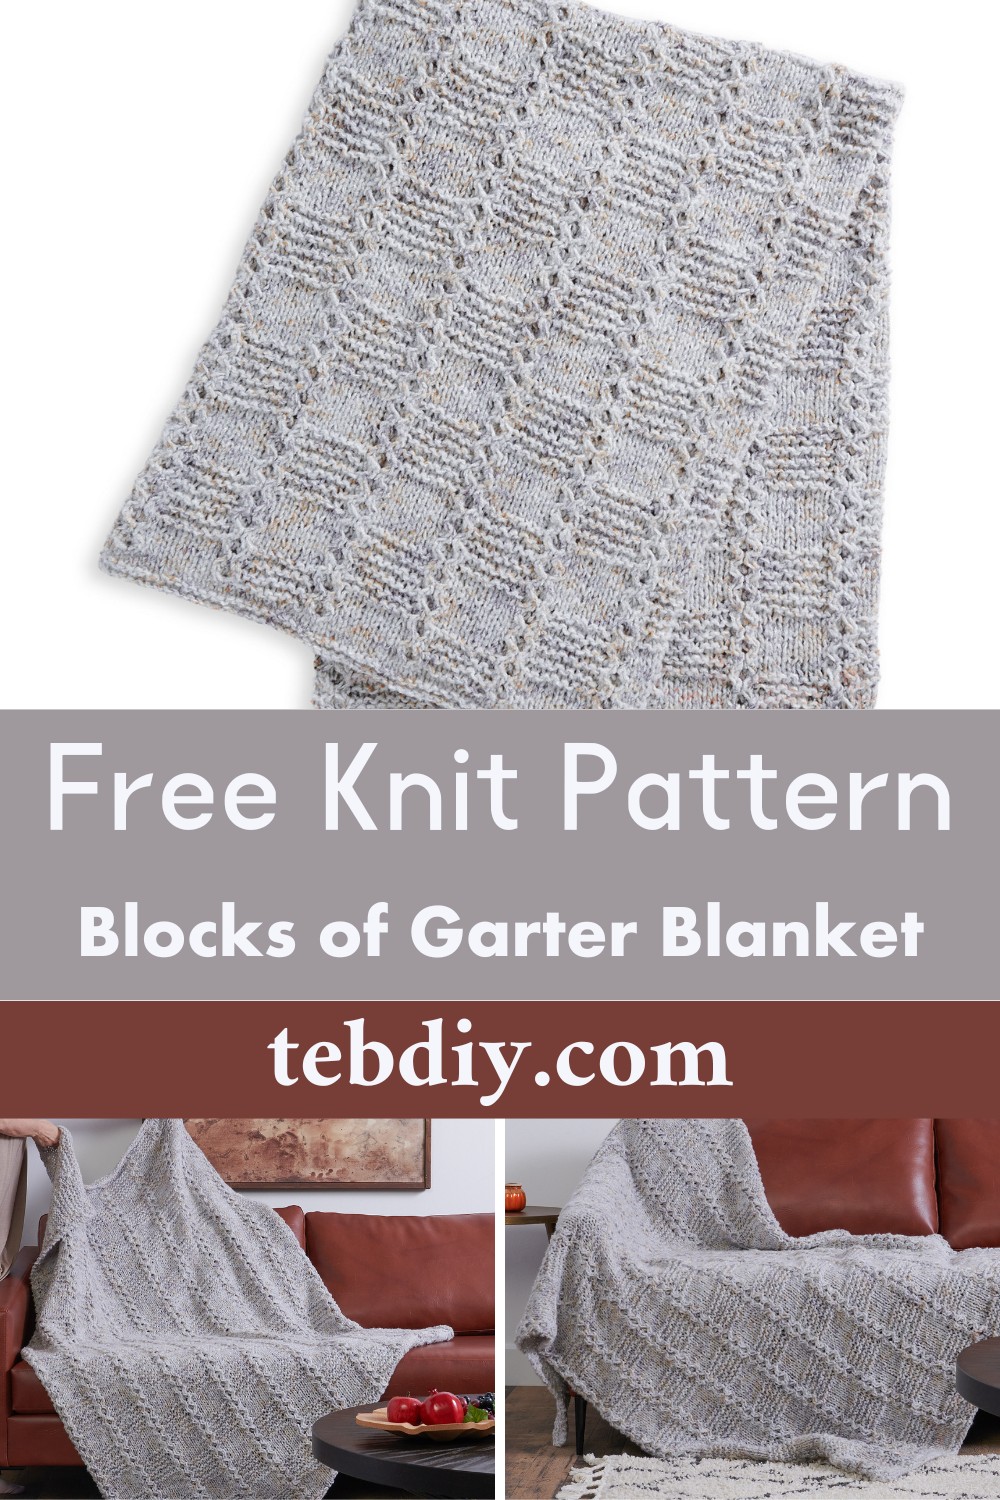 Blocks of Garter Knit Blanket